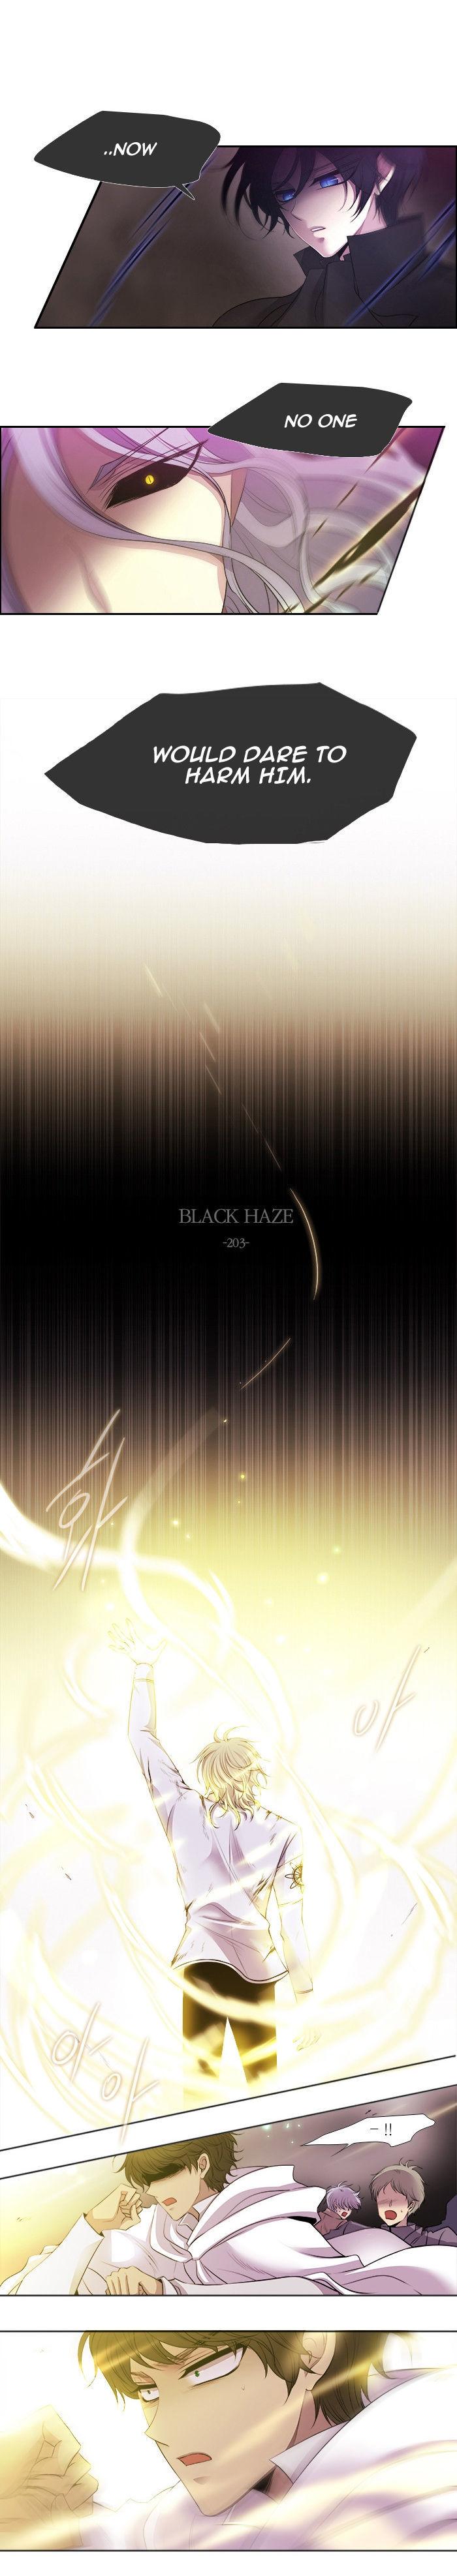 Black Haze 203 1